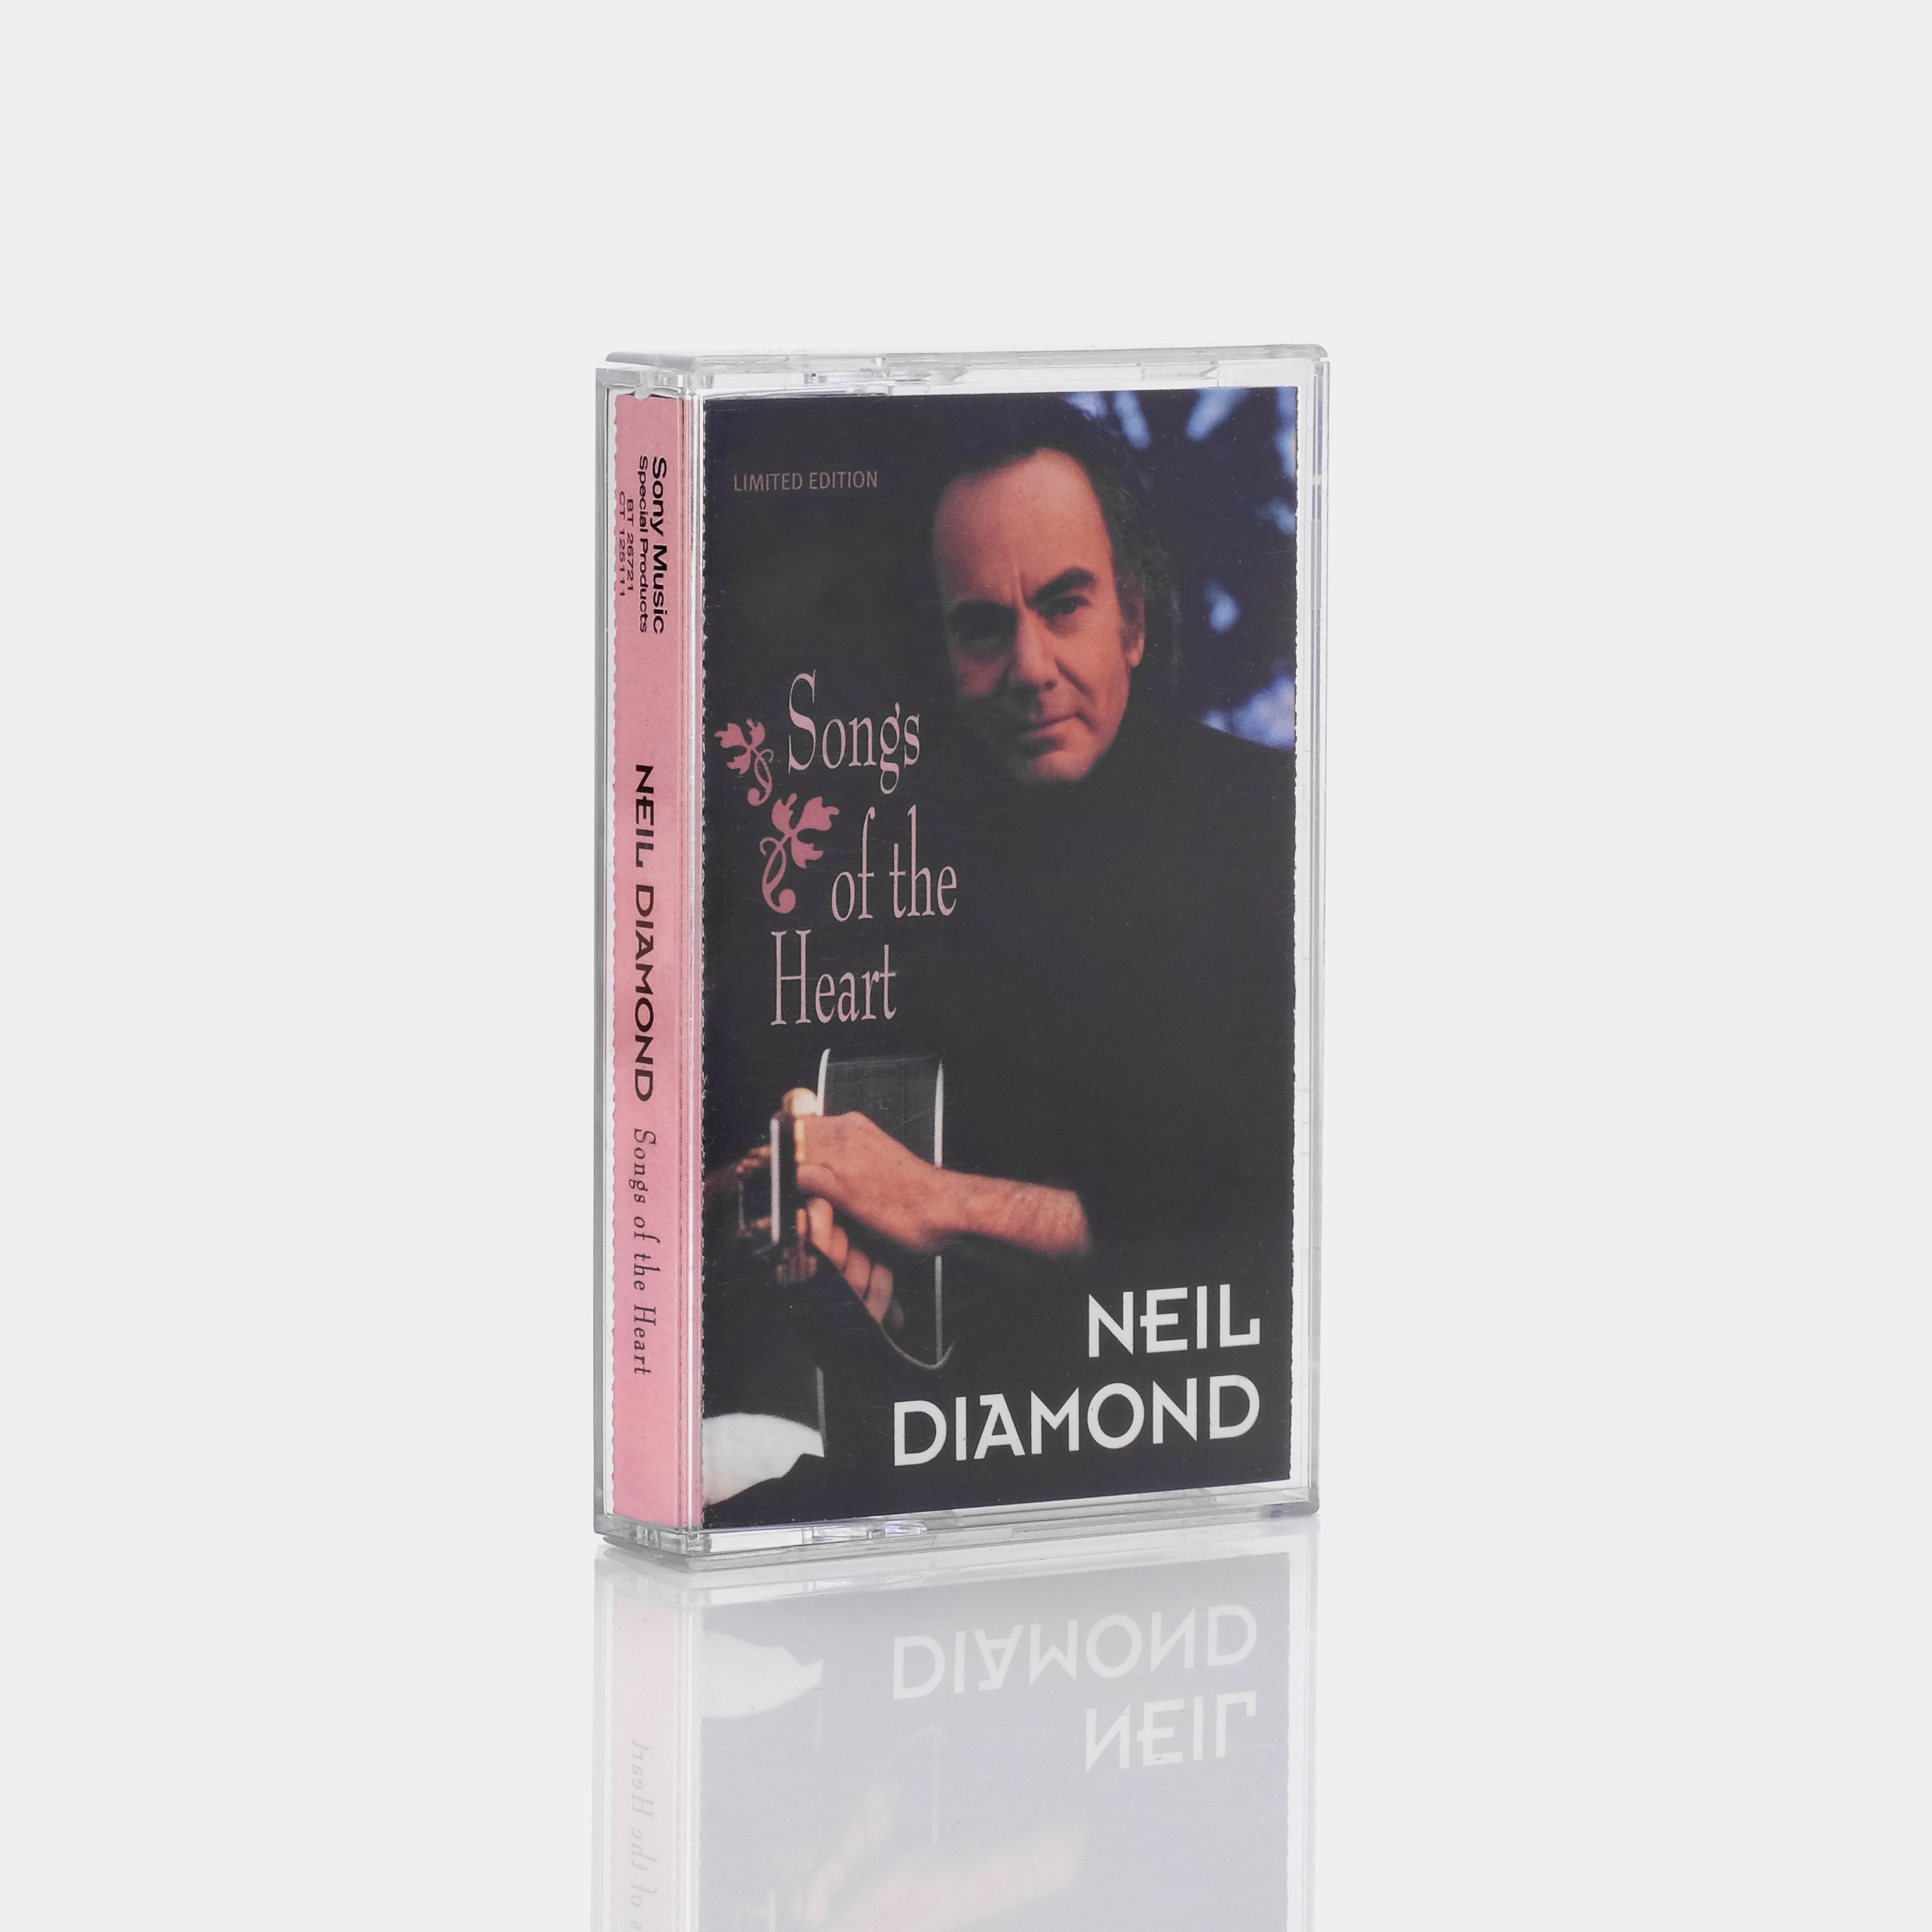 Neil Diamond - Songs Of The Heart Cassette Tape